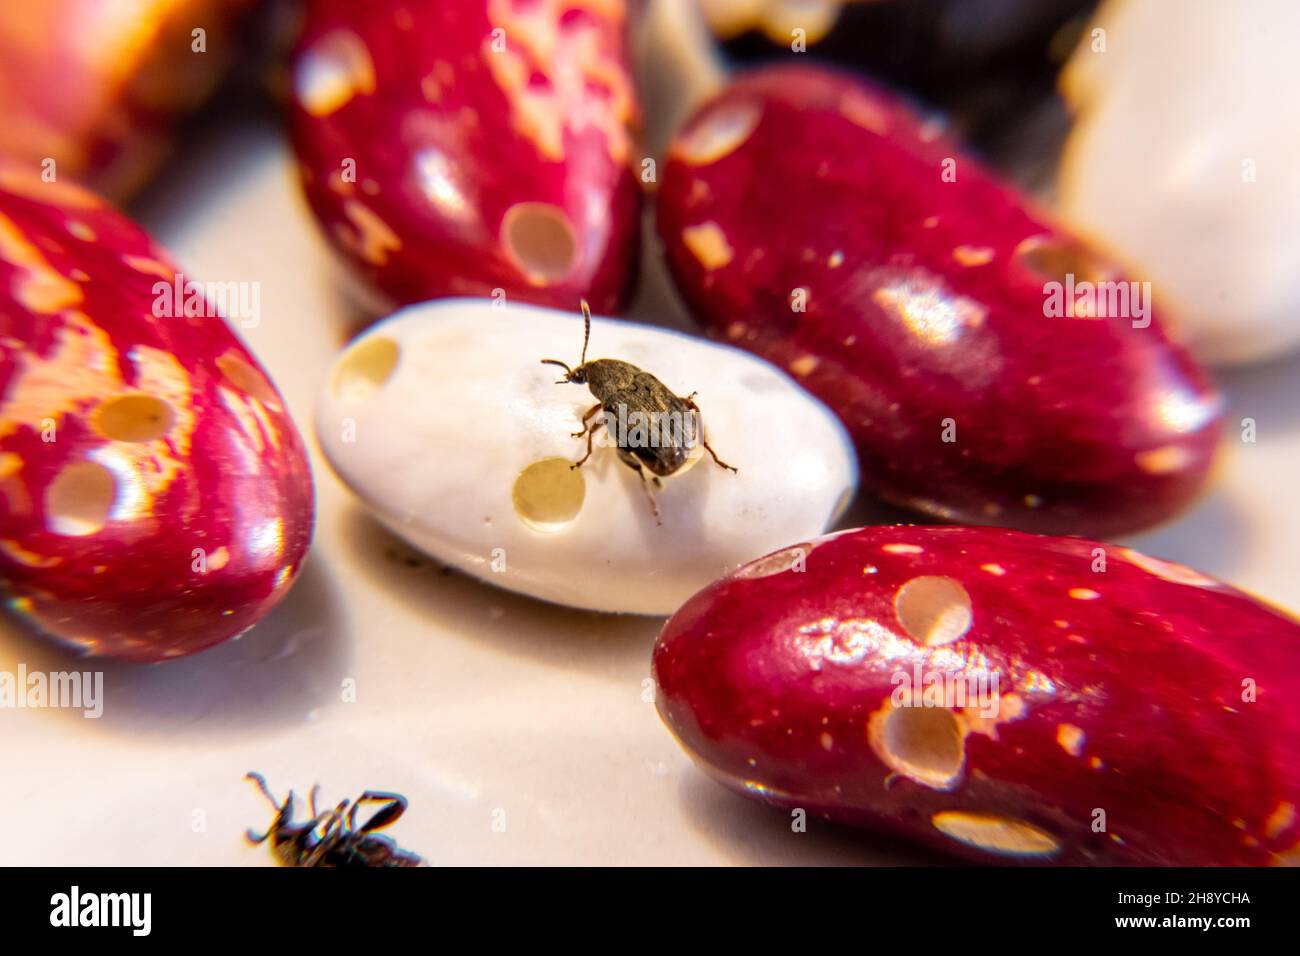 le coléoptère rampant sur les haricots blancs mûrs consommés de l'intérieur par les larves, foyer sélectif Banque D'Images